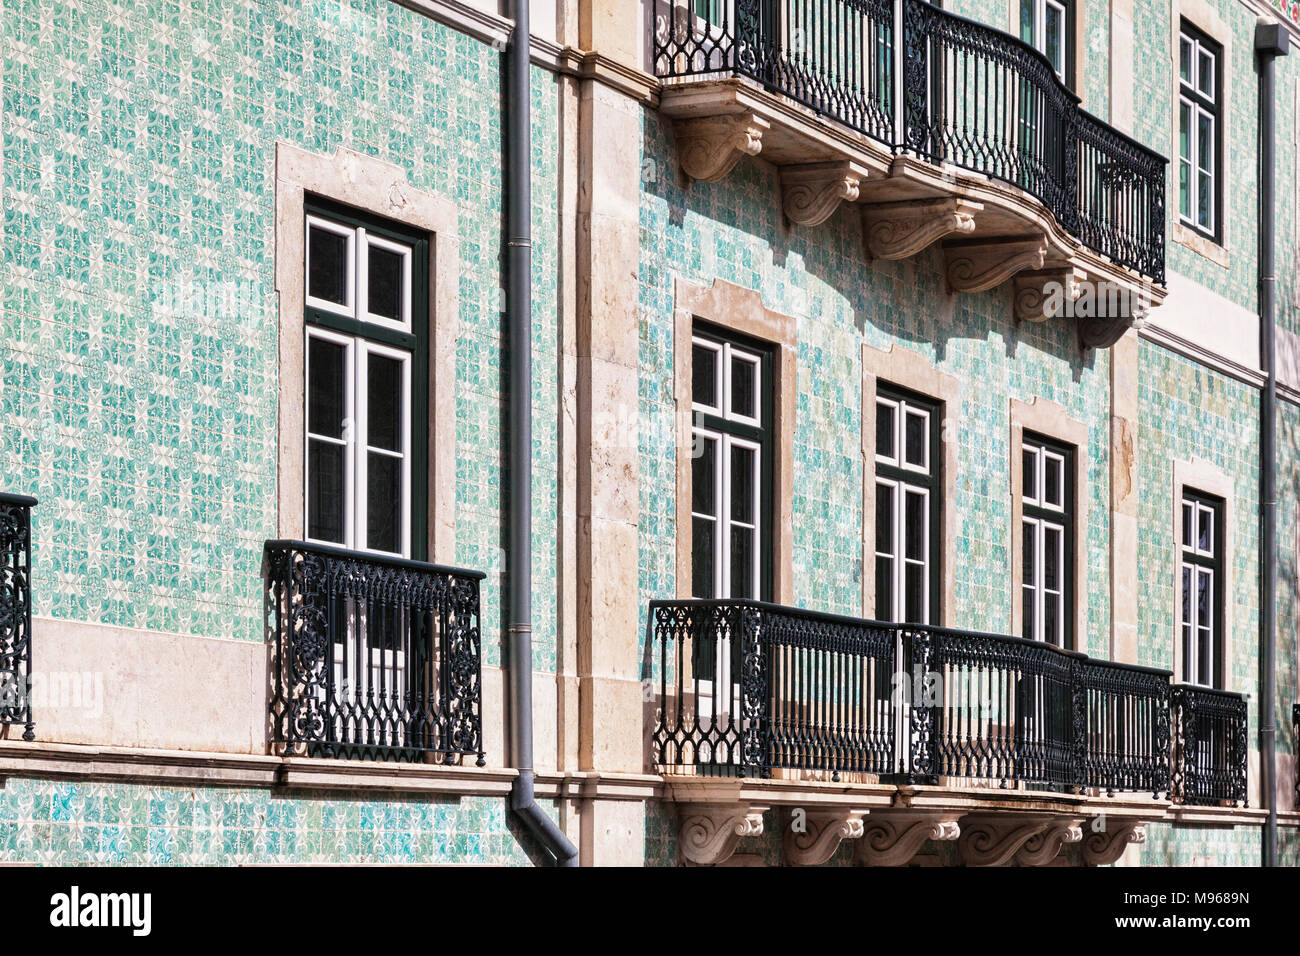 1 Marzo 2018: Lisbona, Portogallo - Edificio nella Città Vecchia con piatti tipici con piastrelle di ceramica in facciata e balconi in ferro battuto. Foto Stock